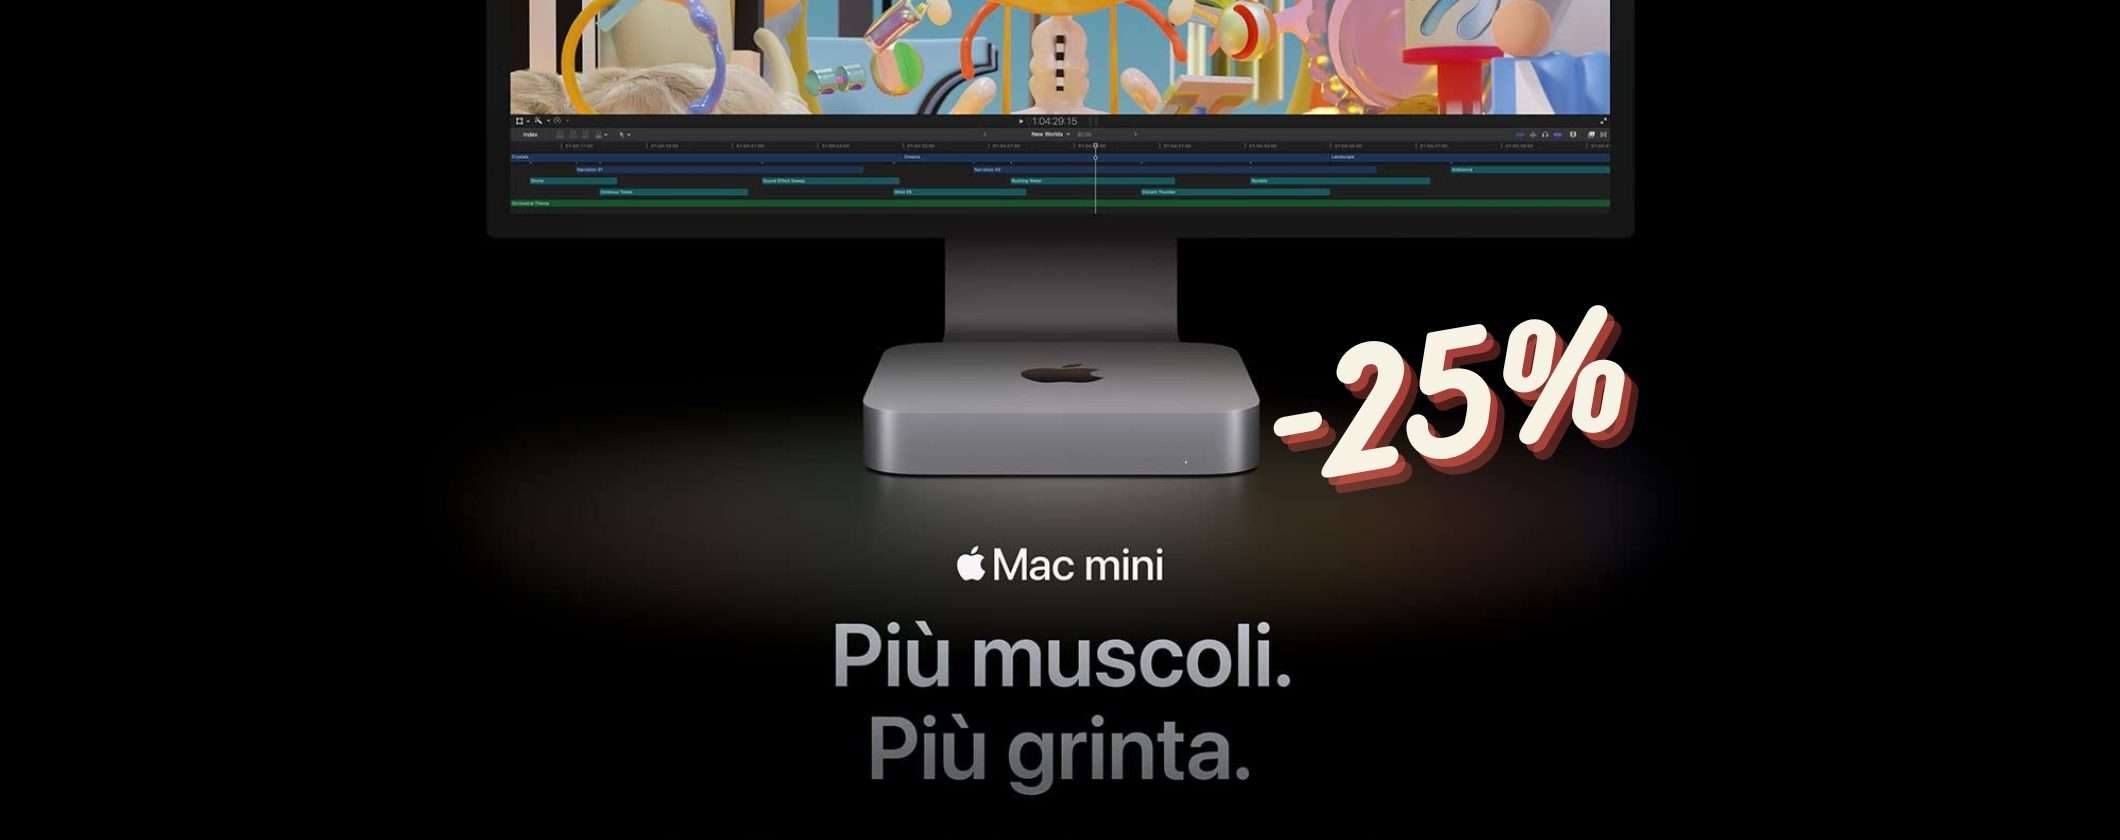 Mac mini M2 al MINIMO STORICO su Amazon: 25% di SCONTO